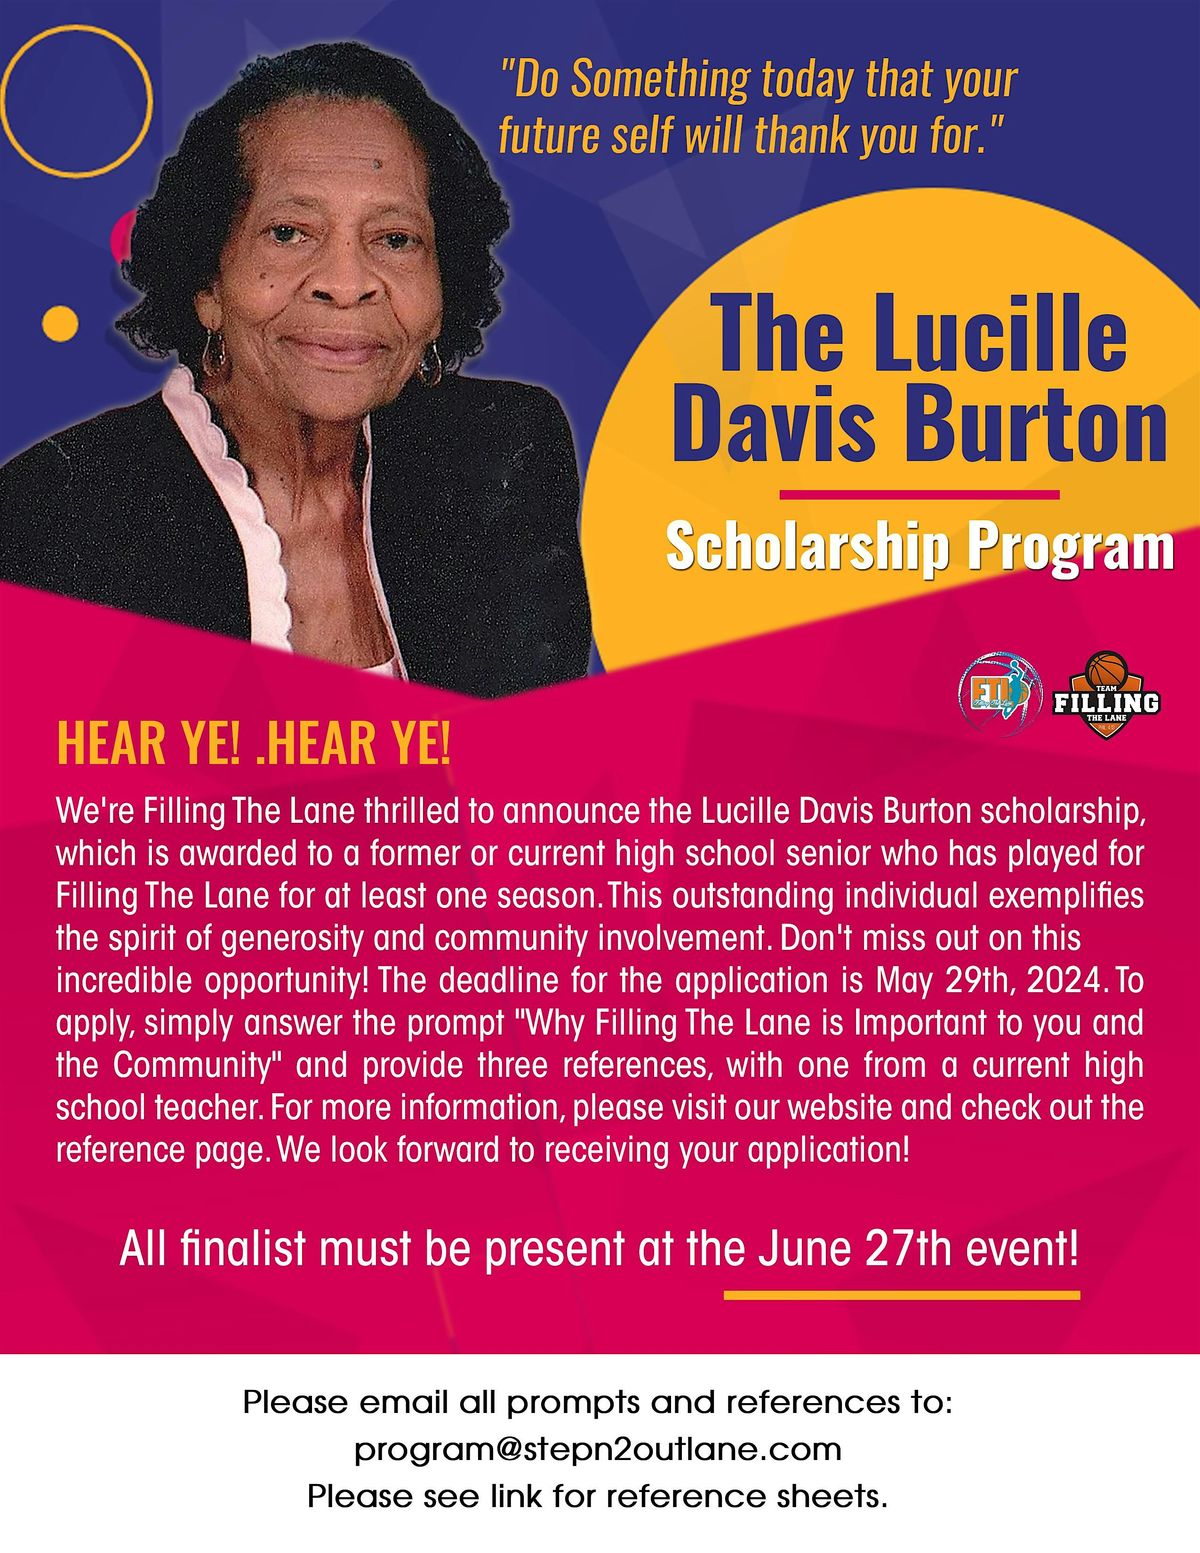 The Lucille Davis Burton Scholarship Program